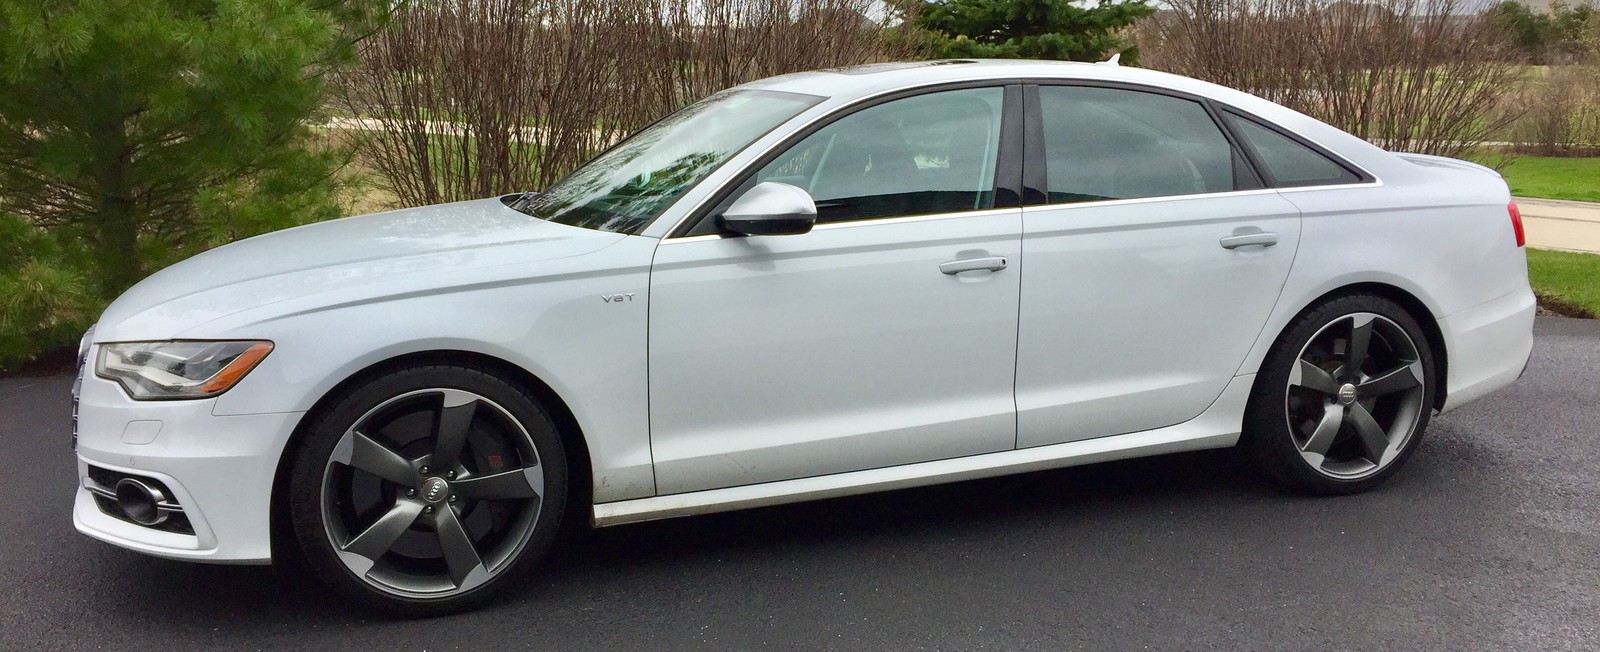 White 2013 Audi S6 